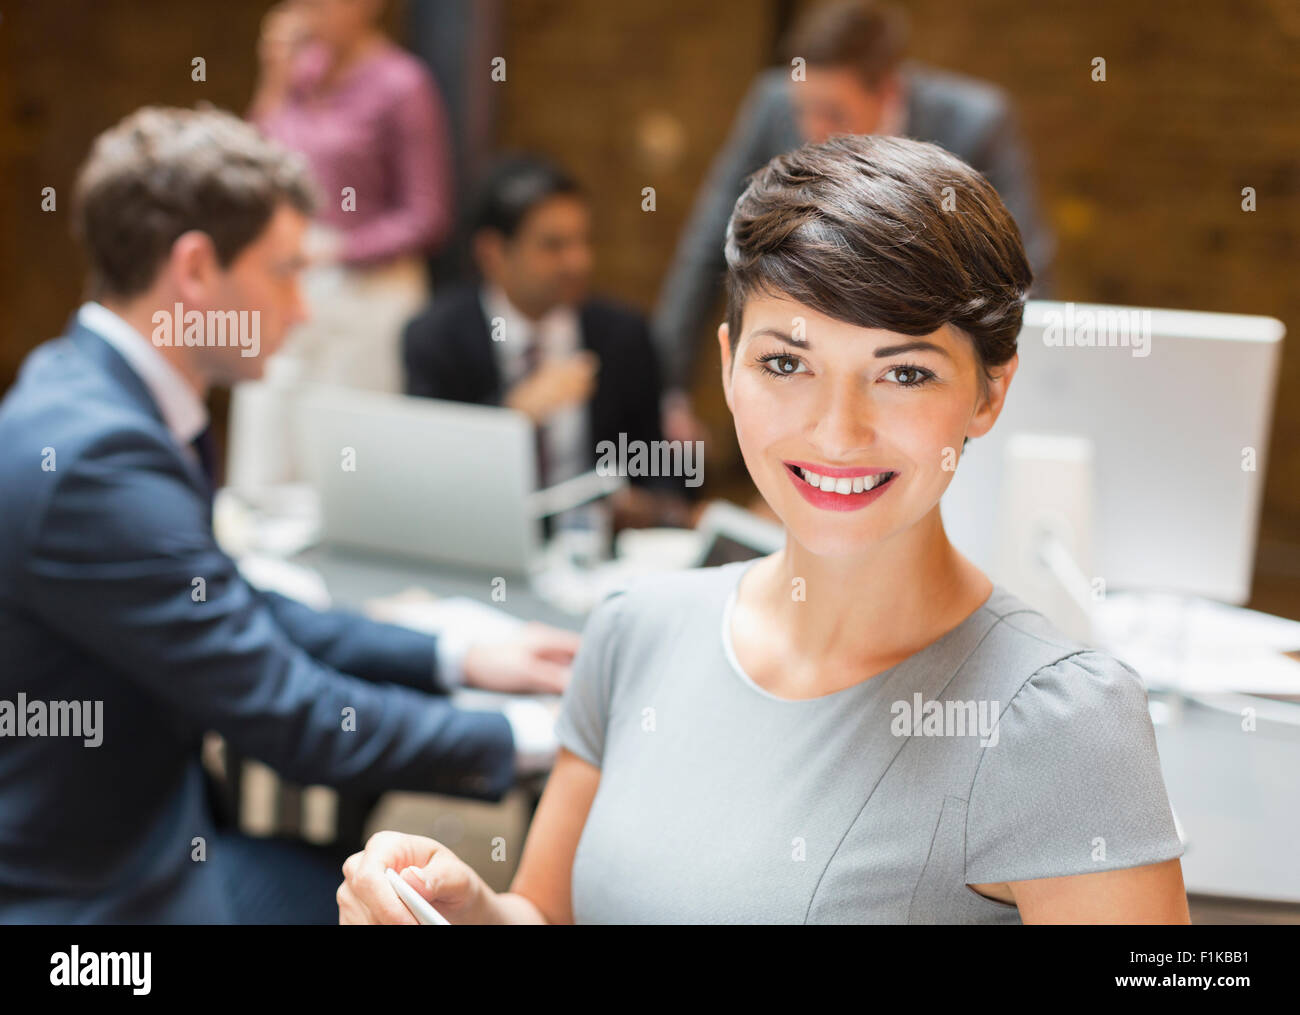 Portrait confident businesswoman in office Banque D'Images